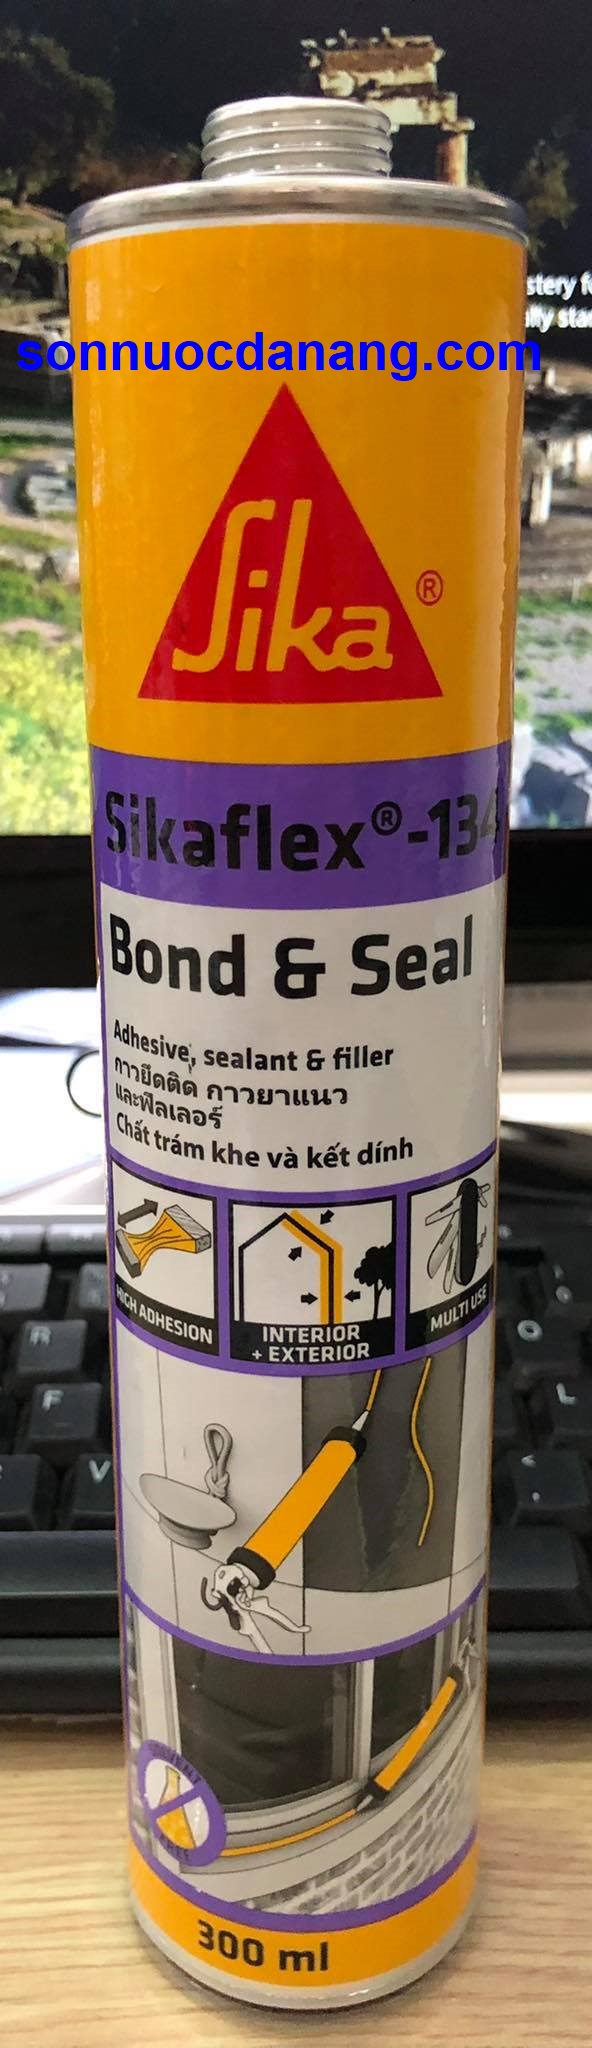 Sikaflex 134 chất bơm trám khe và kết dính